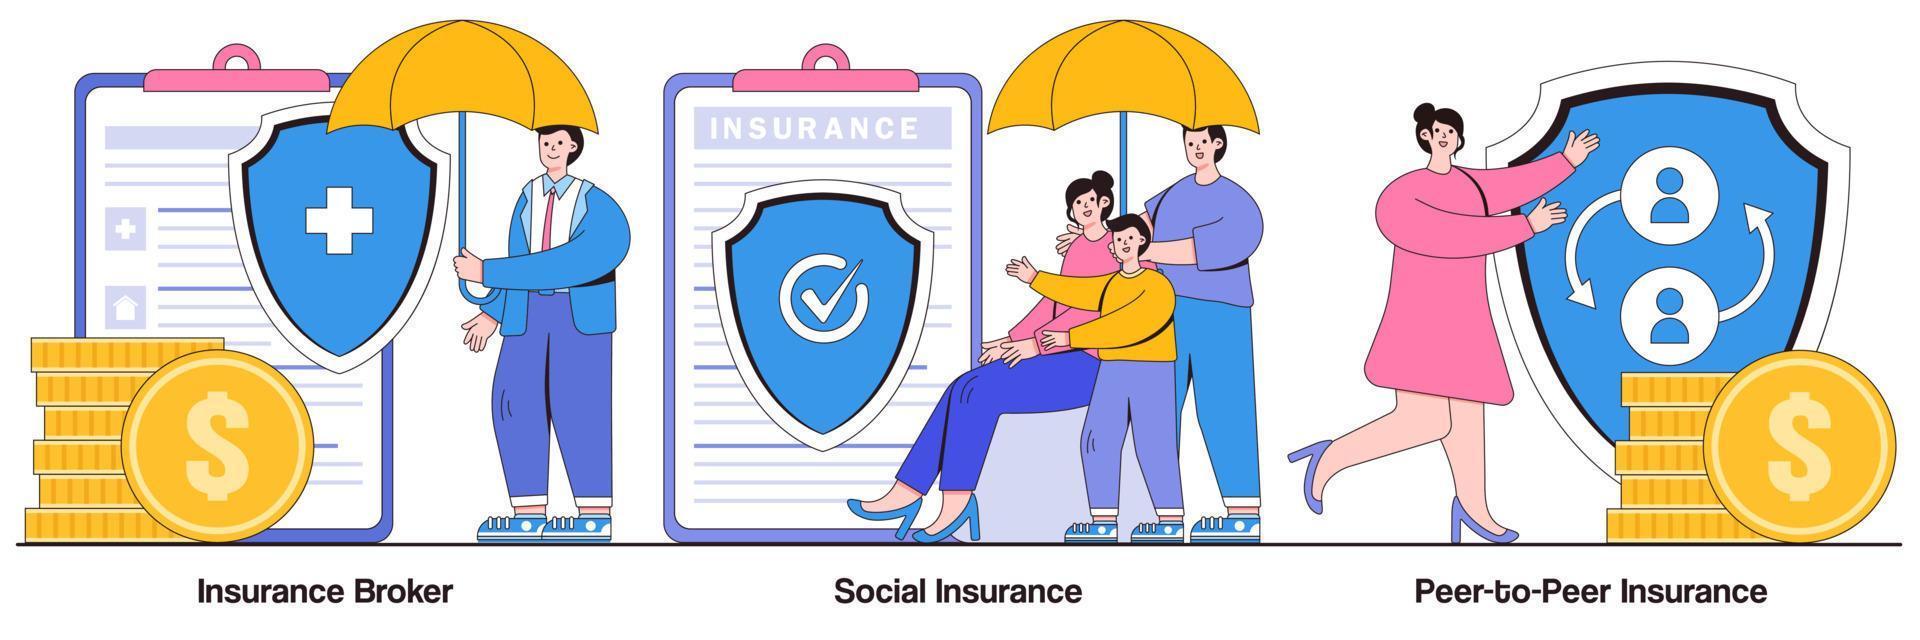 corretor de seguros, seguro social, conceito de seguro peer-to-peer com pessoas pequenas. conjunto de ilustração vetorial de seguro de risco. risco de emergência, desemprego e perda de renda, metáfora do fundo fiduciário de pensão vetor